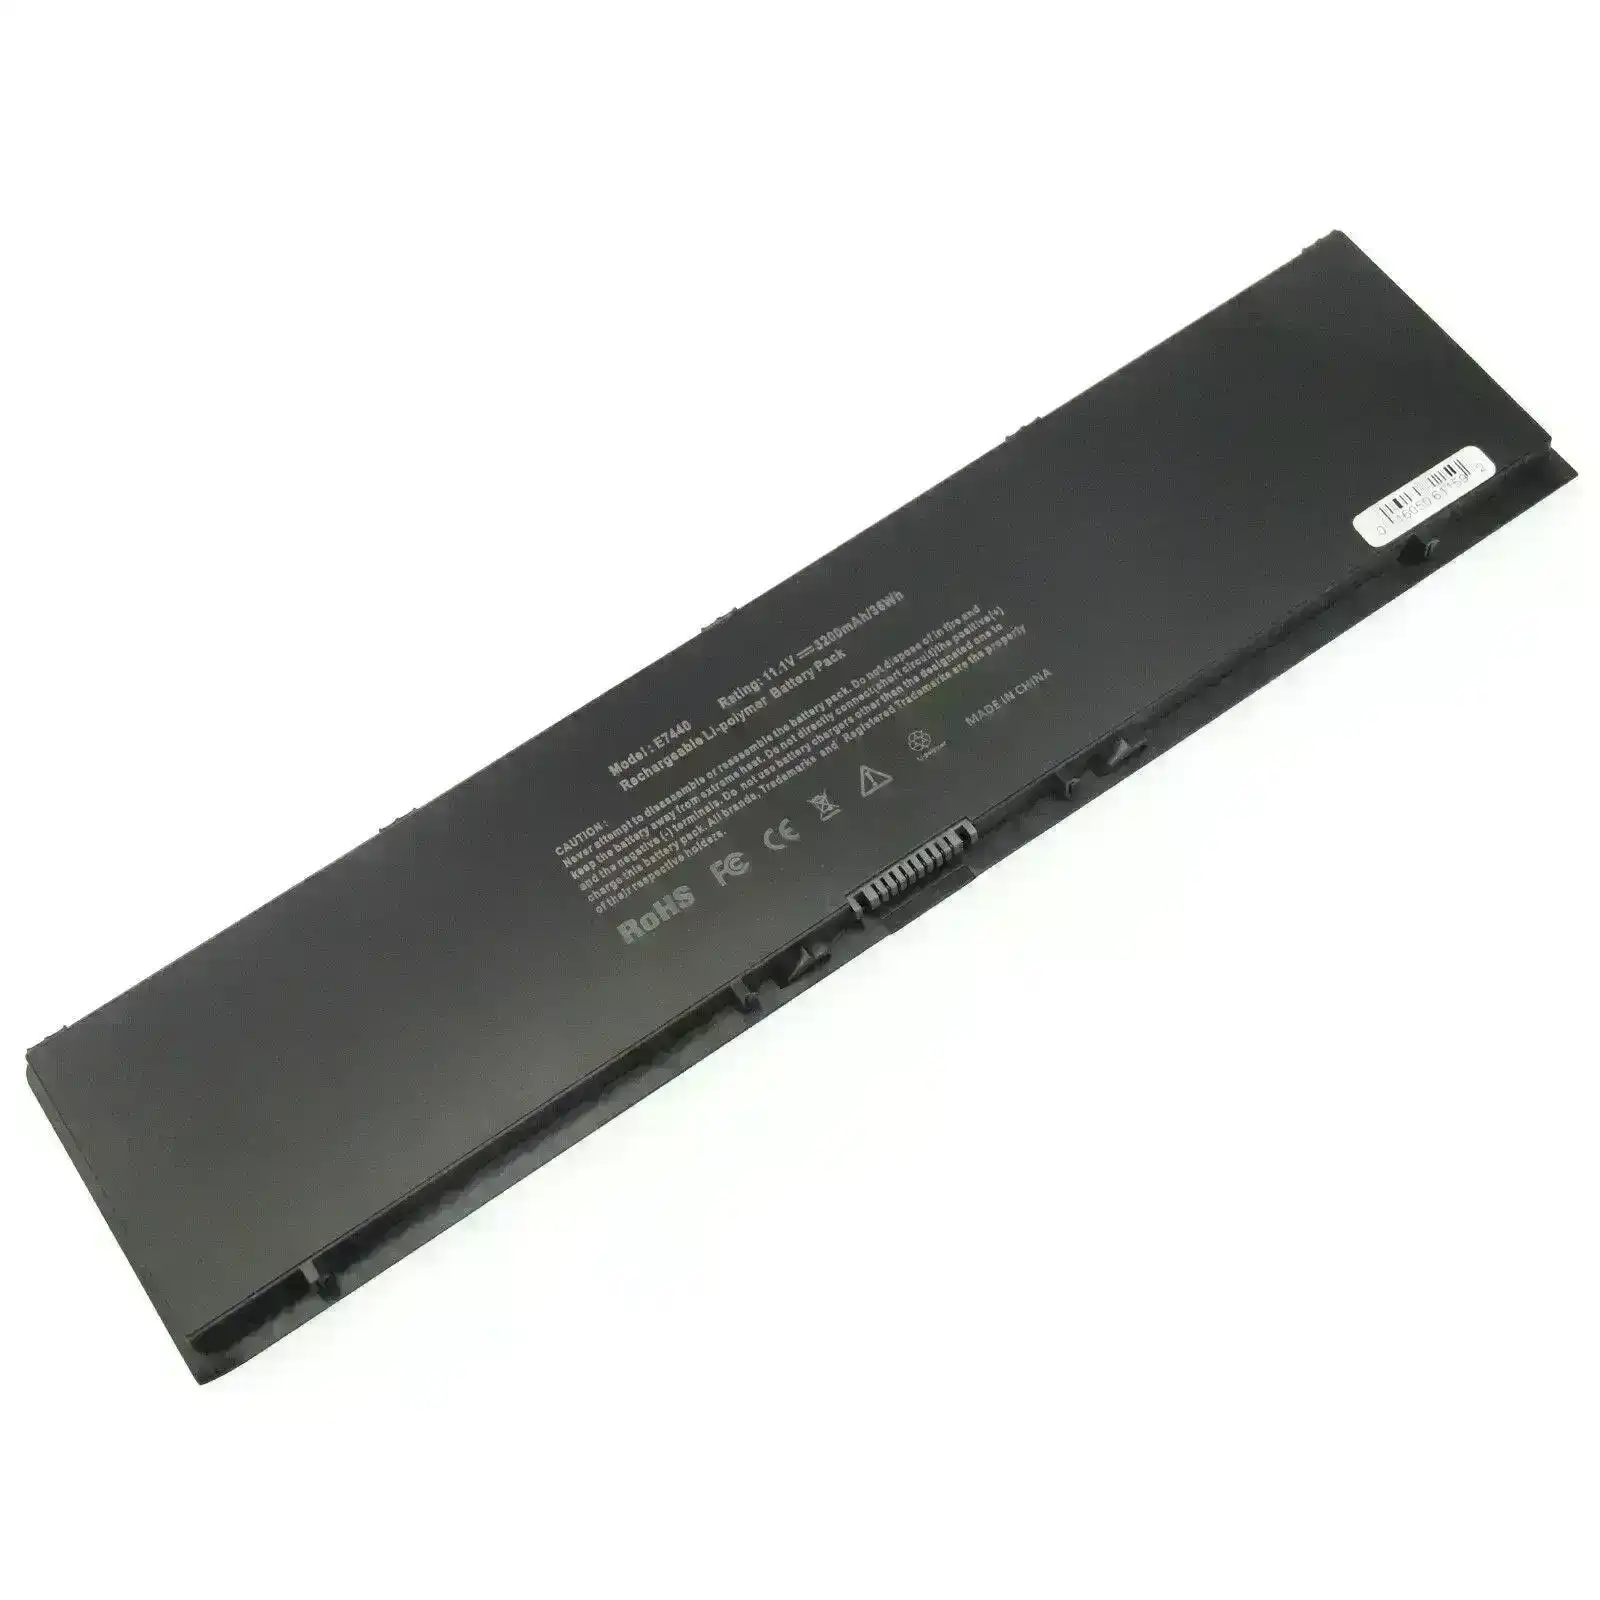 34GKR Compatible Battery for Dell Latitude E7440 E7420 E7450 Series 3RNFD V8XN3 G95J5 34GKR